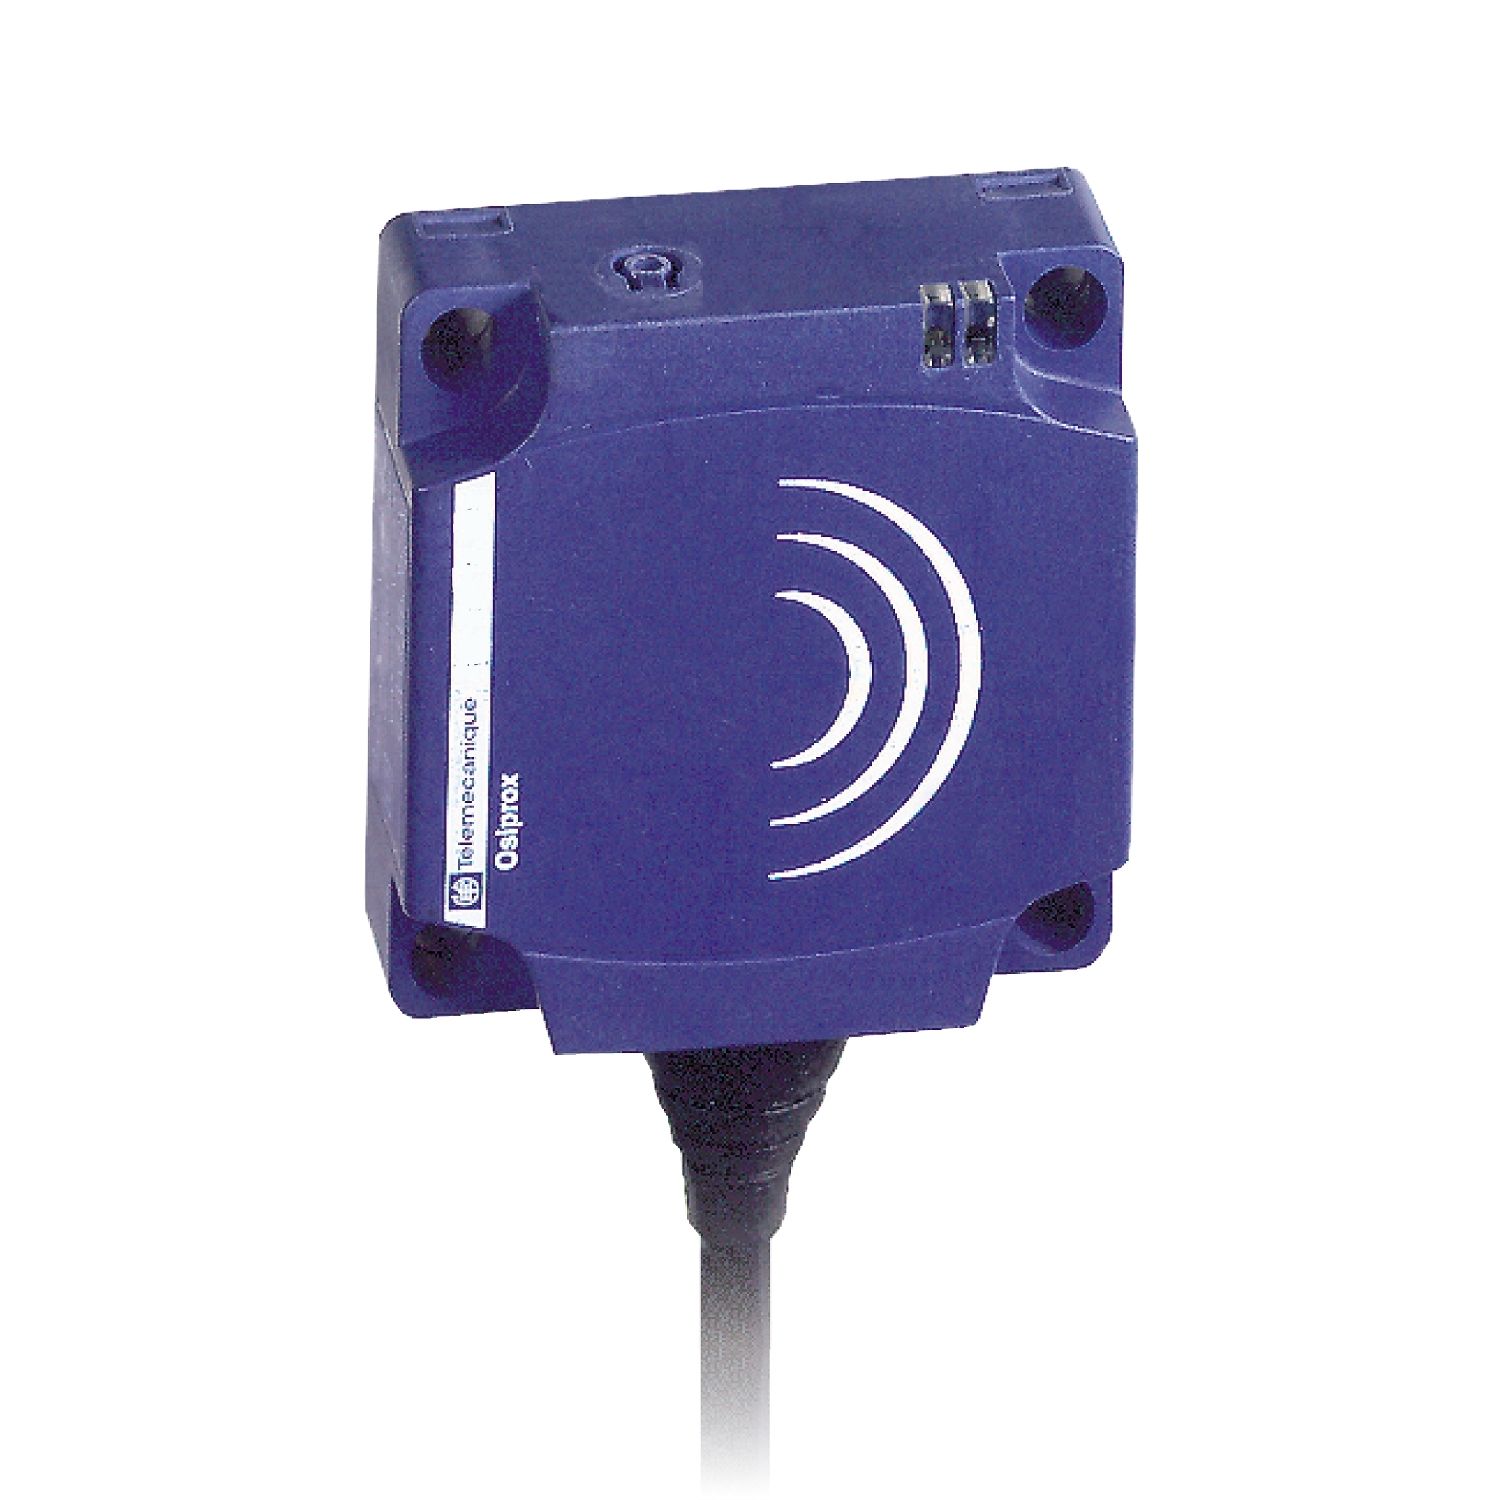 XS8C1A1PAL2 Inductive proximity sensors XS, inductive sensor XS8 40x40x15, PBT, Sn25mm, 12...24 VDC, cable 2 m